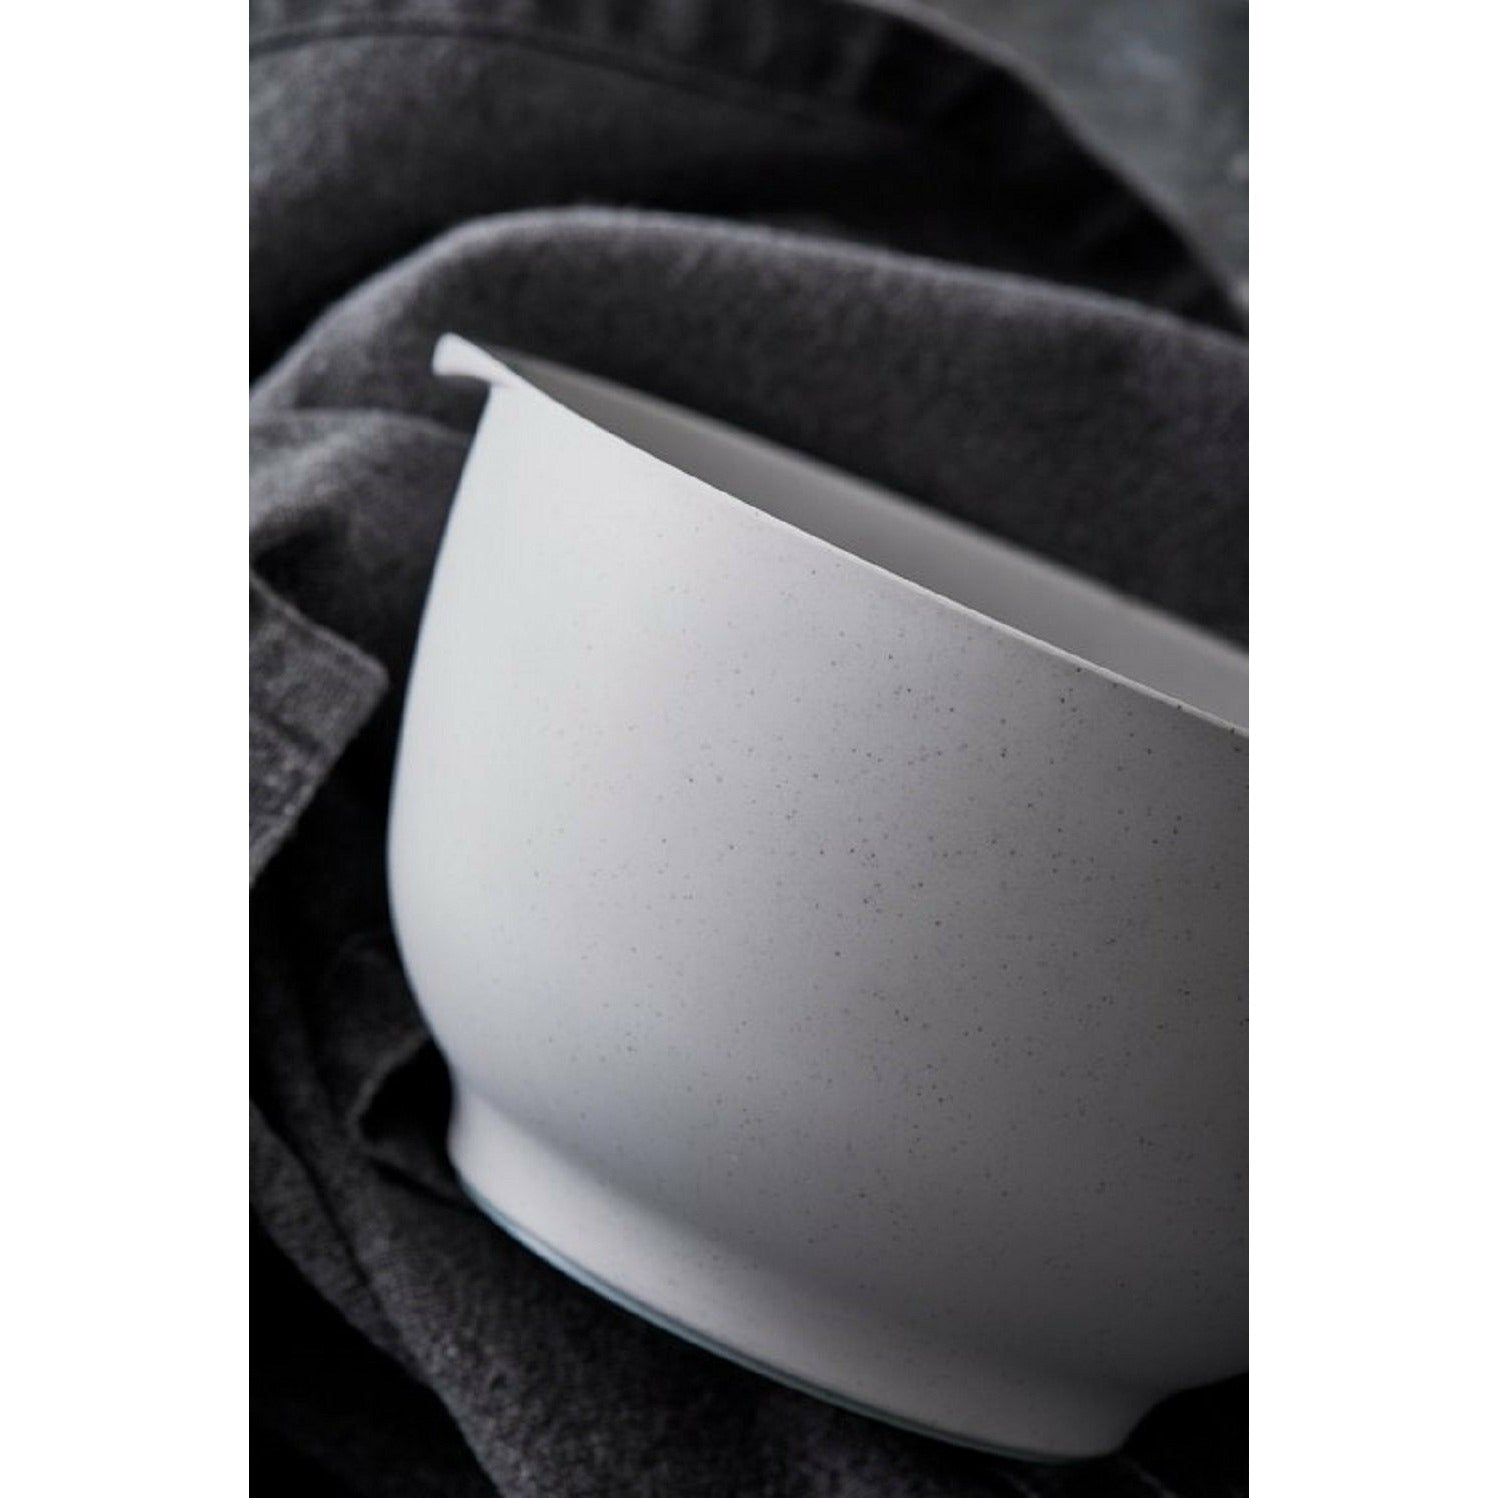 Rosti Margrethe Mixing Bowl White, 5 liter